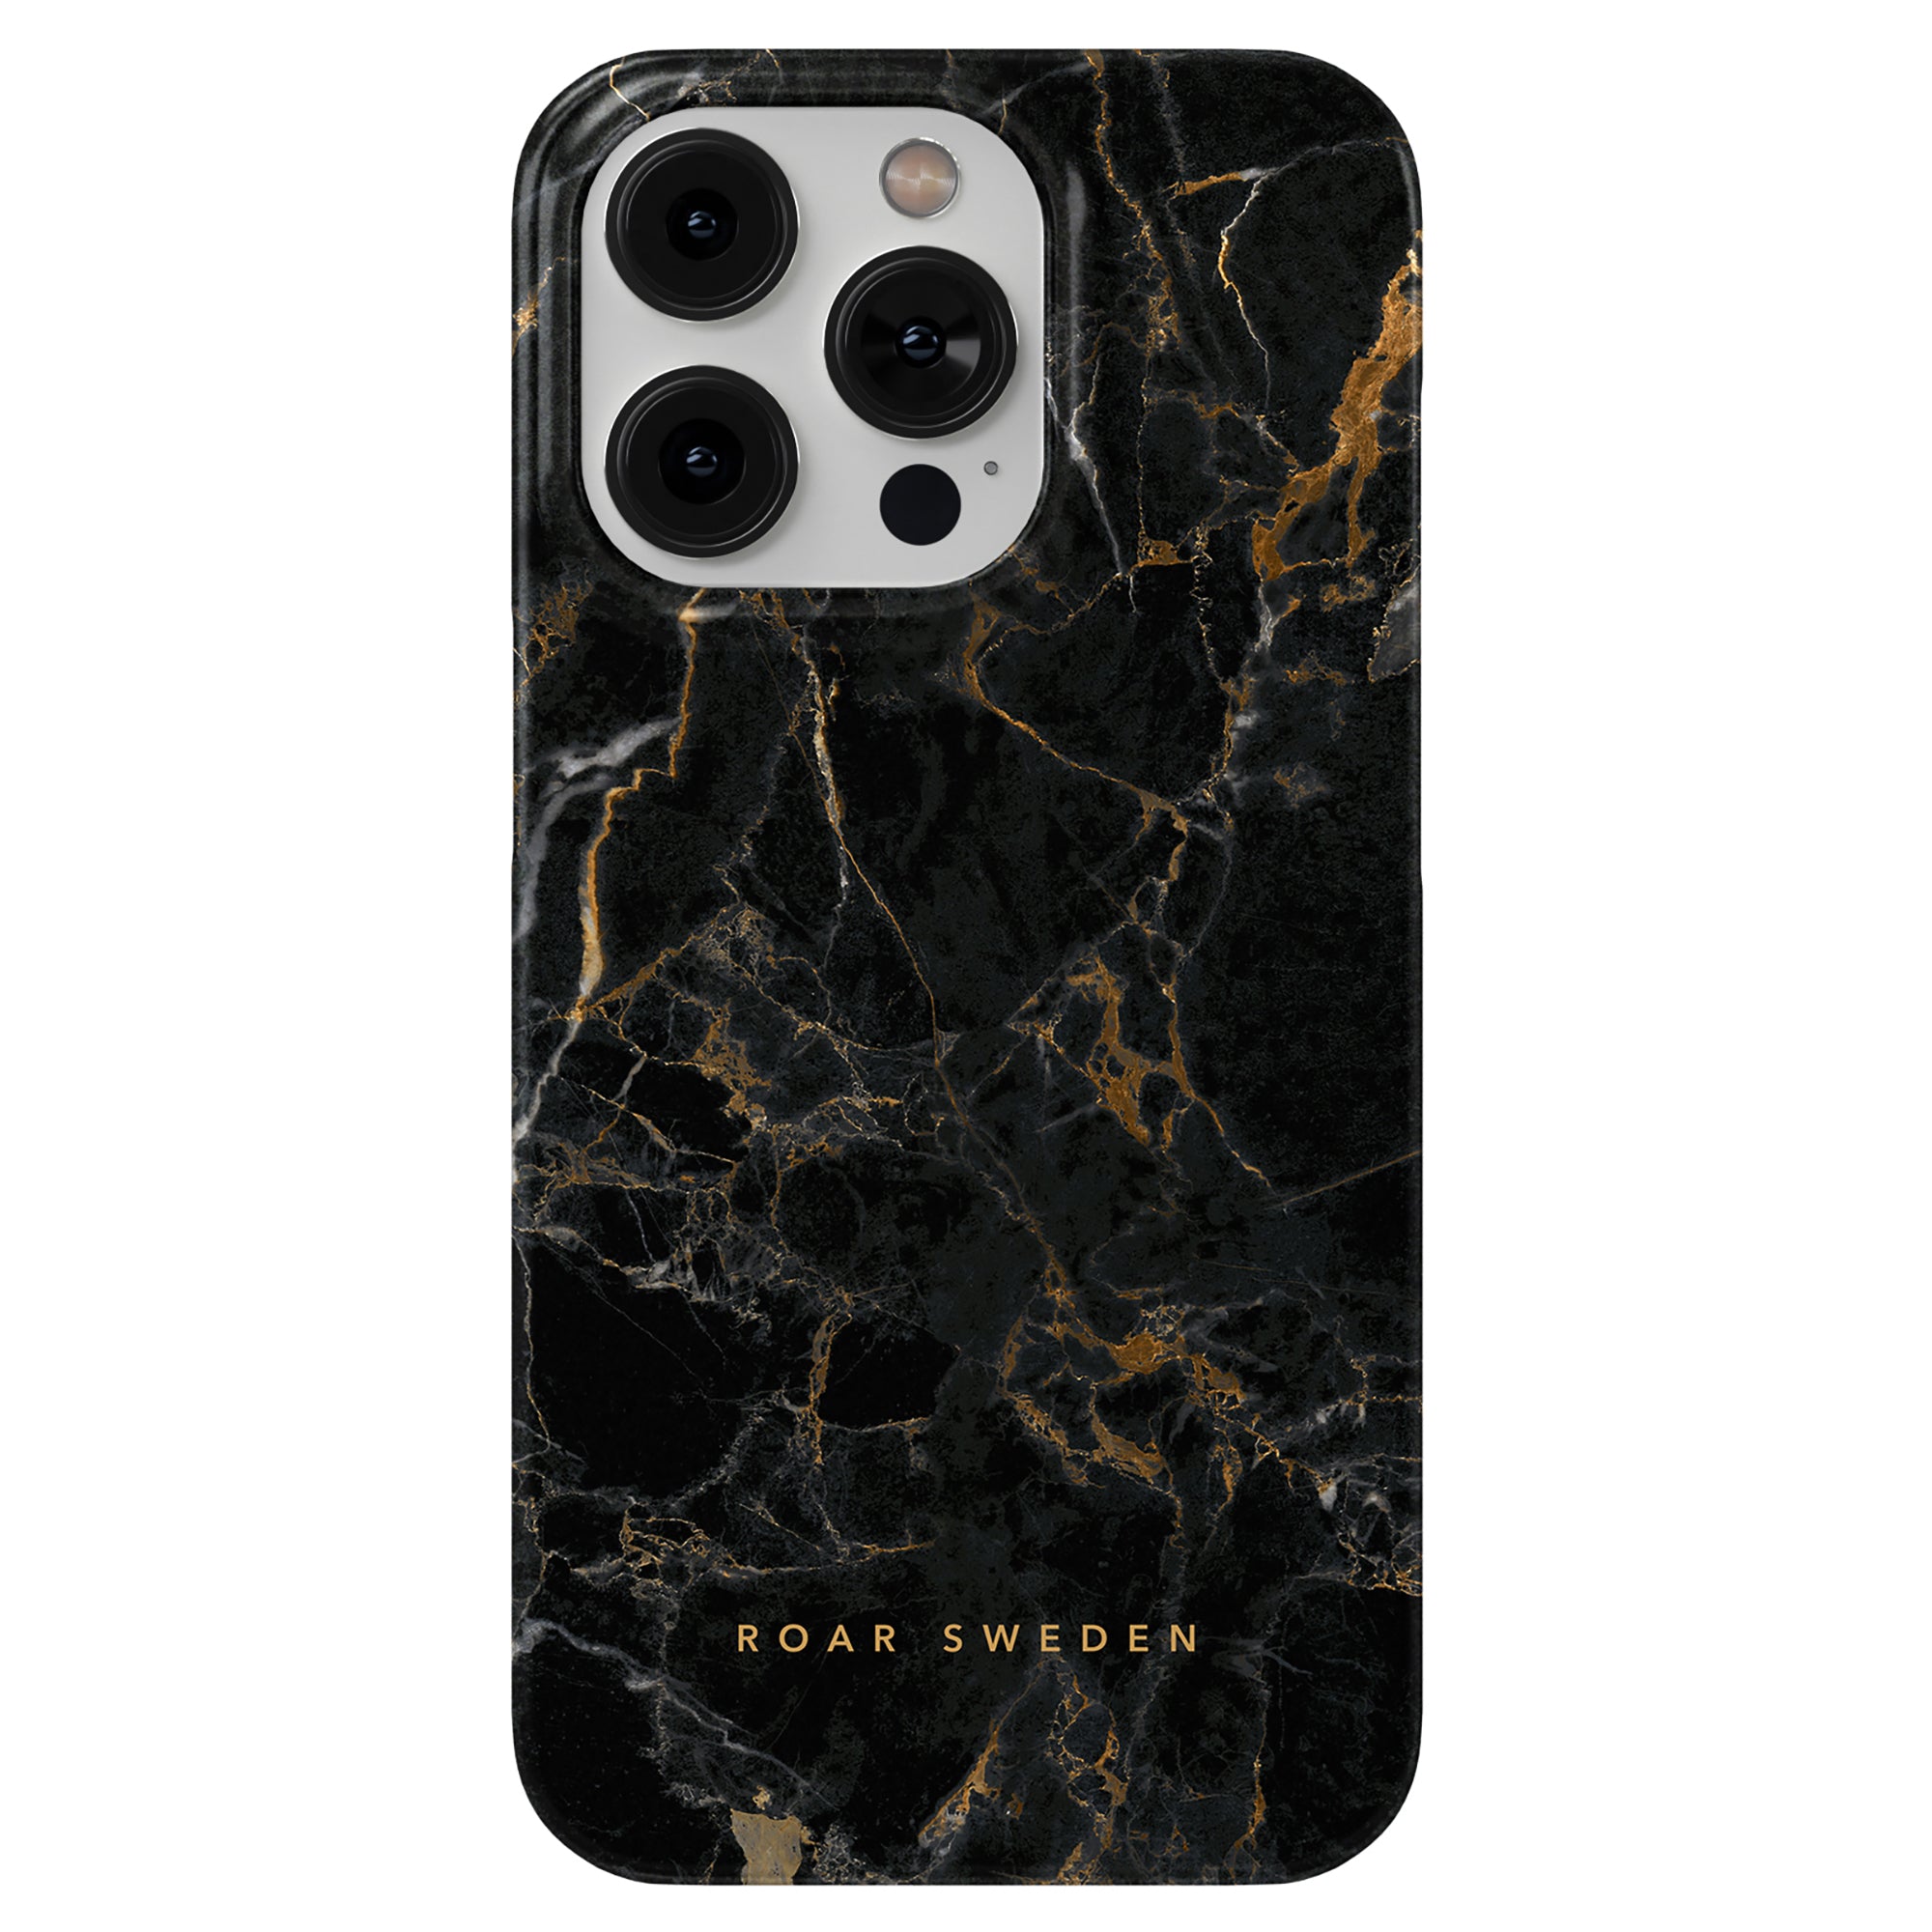 Vi presenterar vårt eleganta svarta och guld Portoro - Slim fodral, designat exklusivt för iPhone 11.